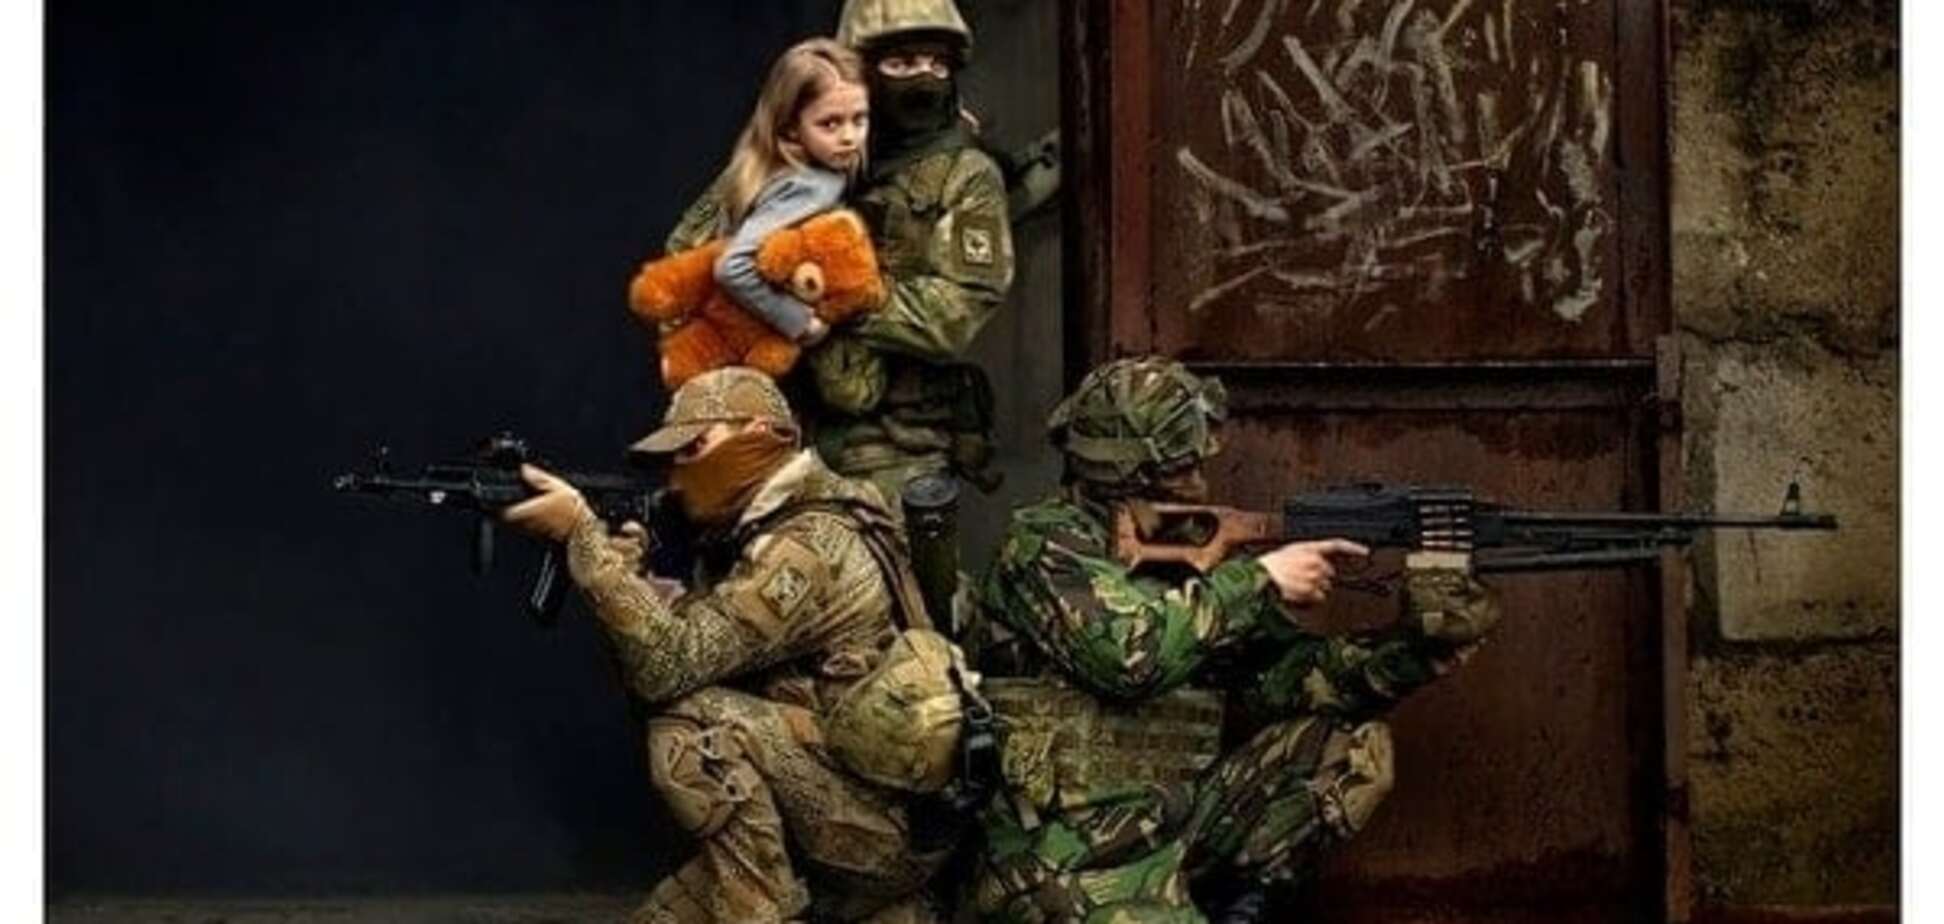 Донбасс и дети войны: потрясающий фотопроект